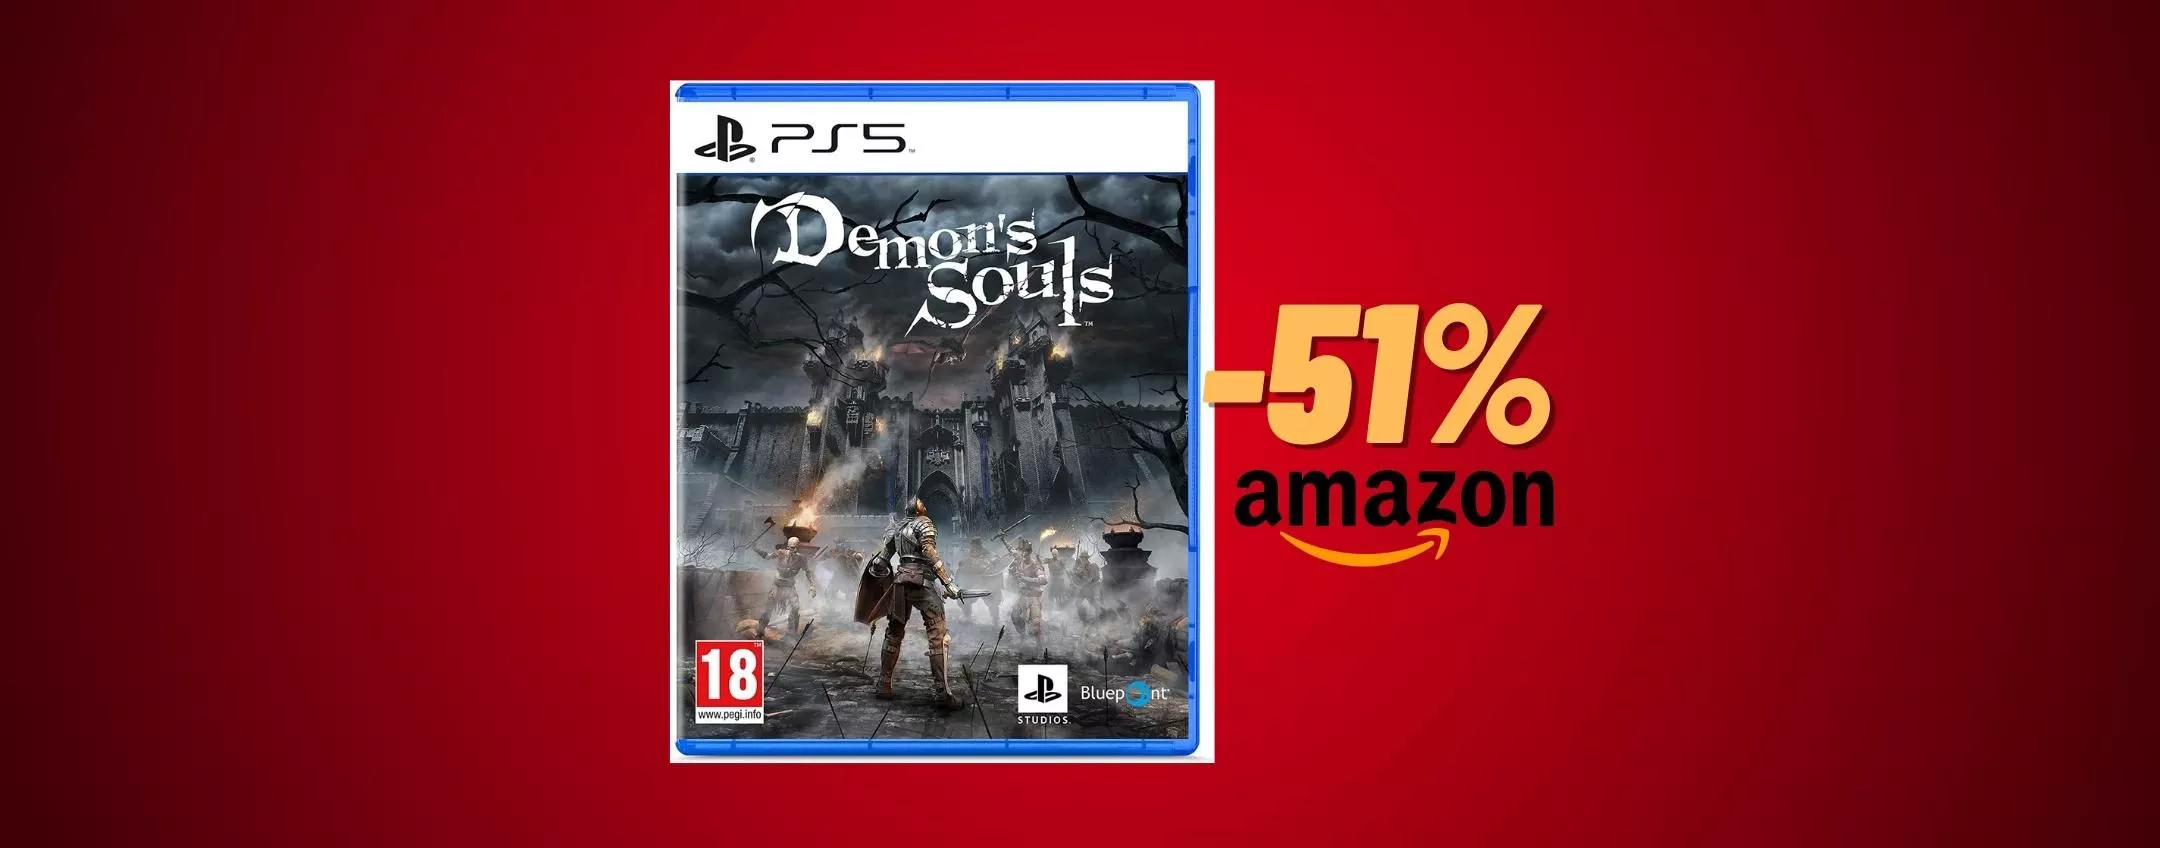 Demon's Souls per PlayStation 5: prezzo che PRECIPITA su Amazon